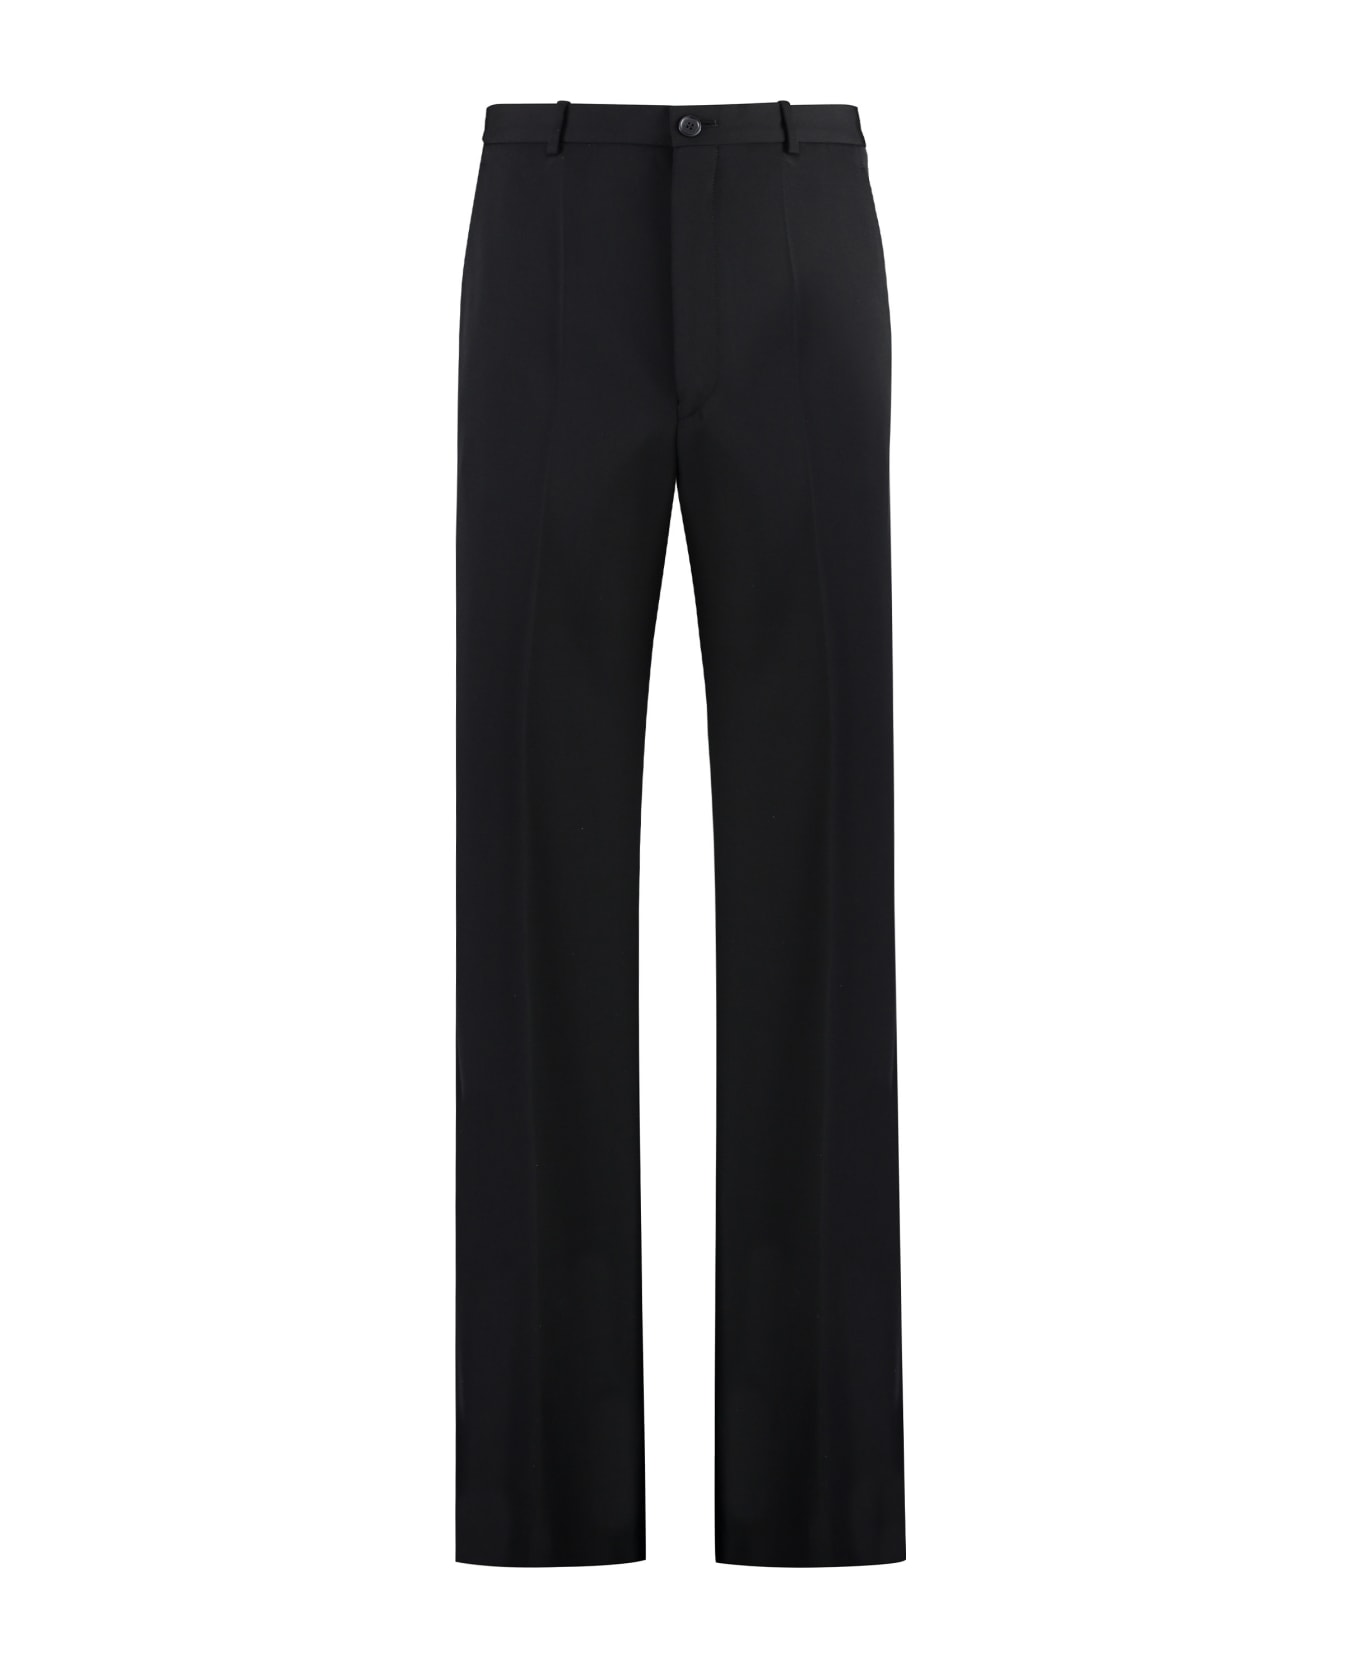 Balenciaga Wool Pants - black ボトムス